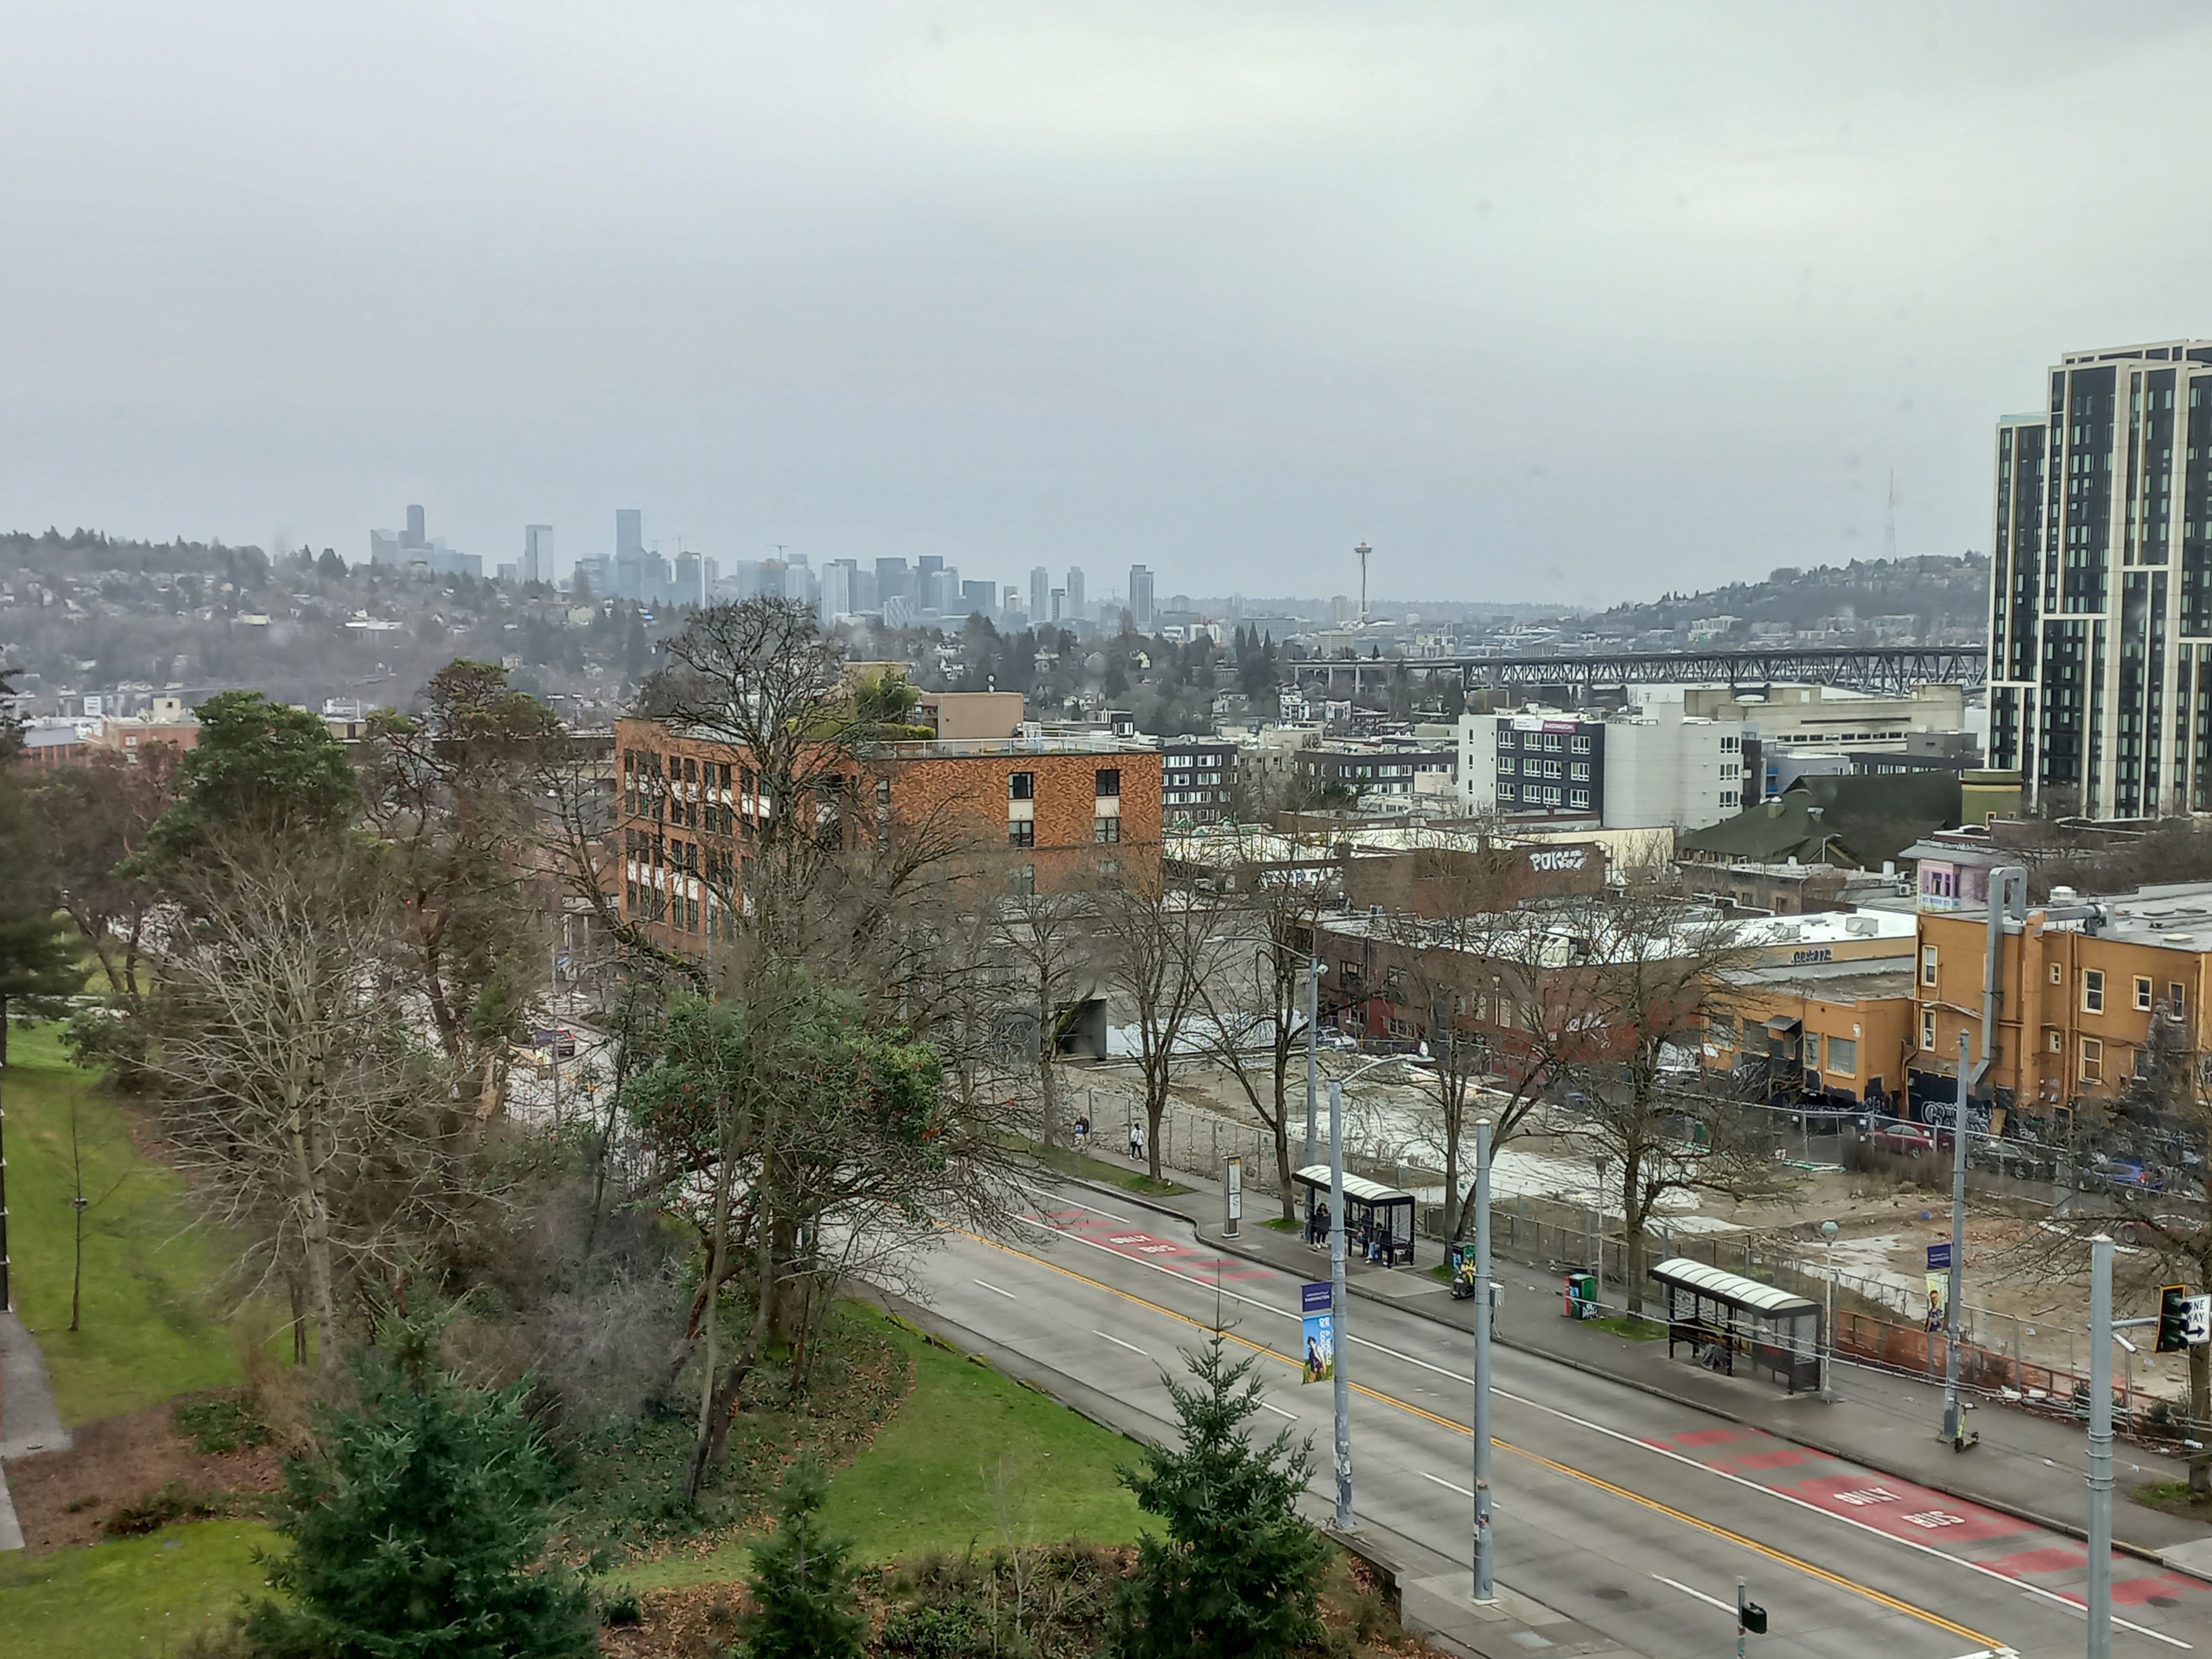 És akkor egy pillantás a mai Seattle-re a 2. emeletről.